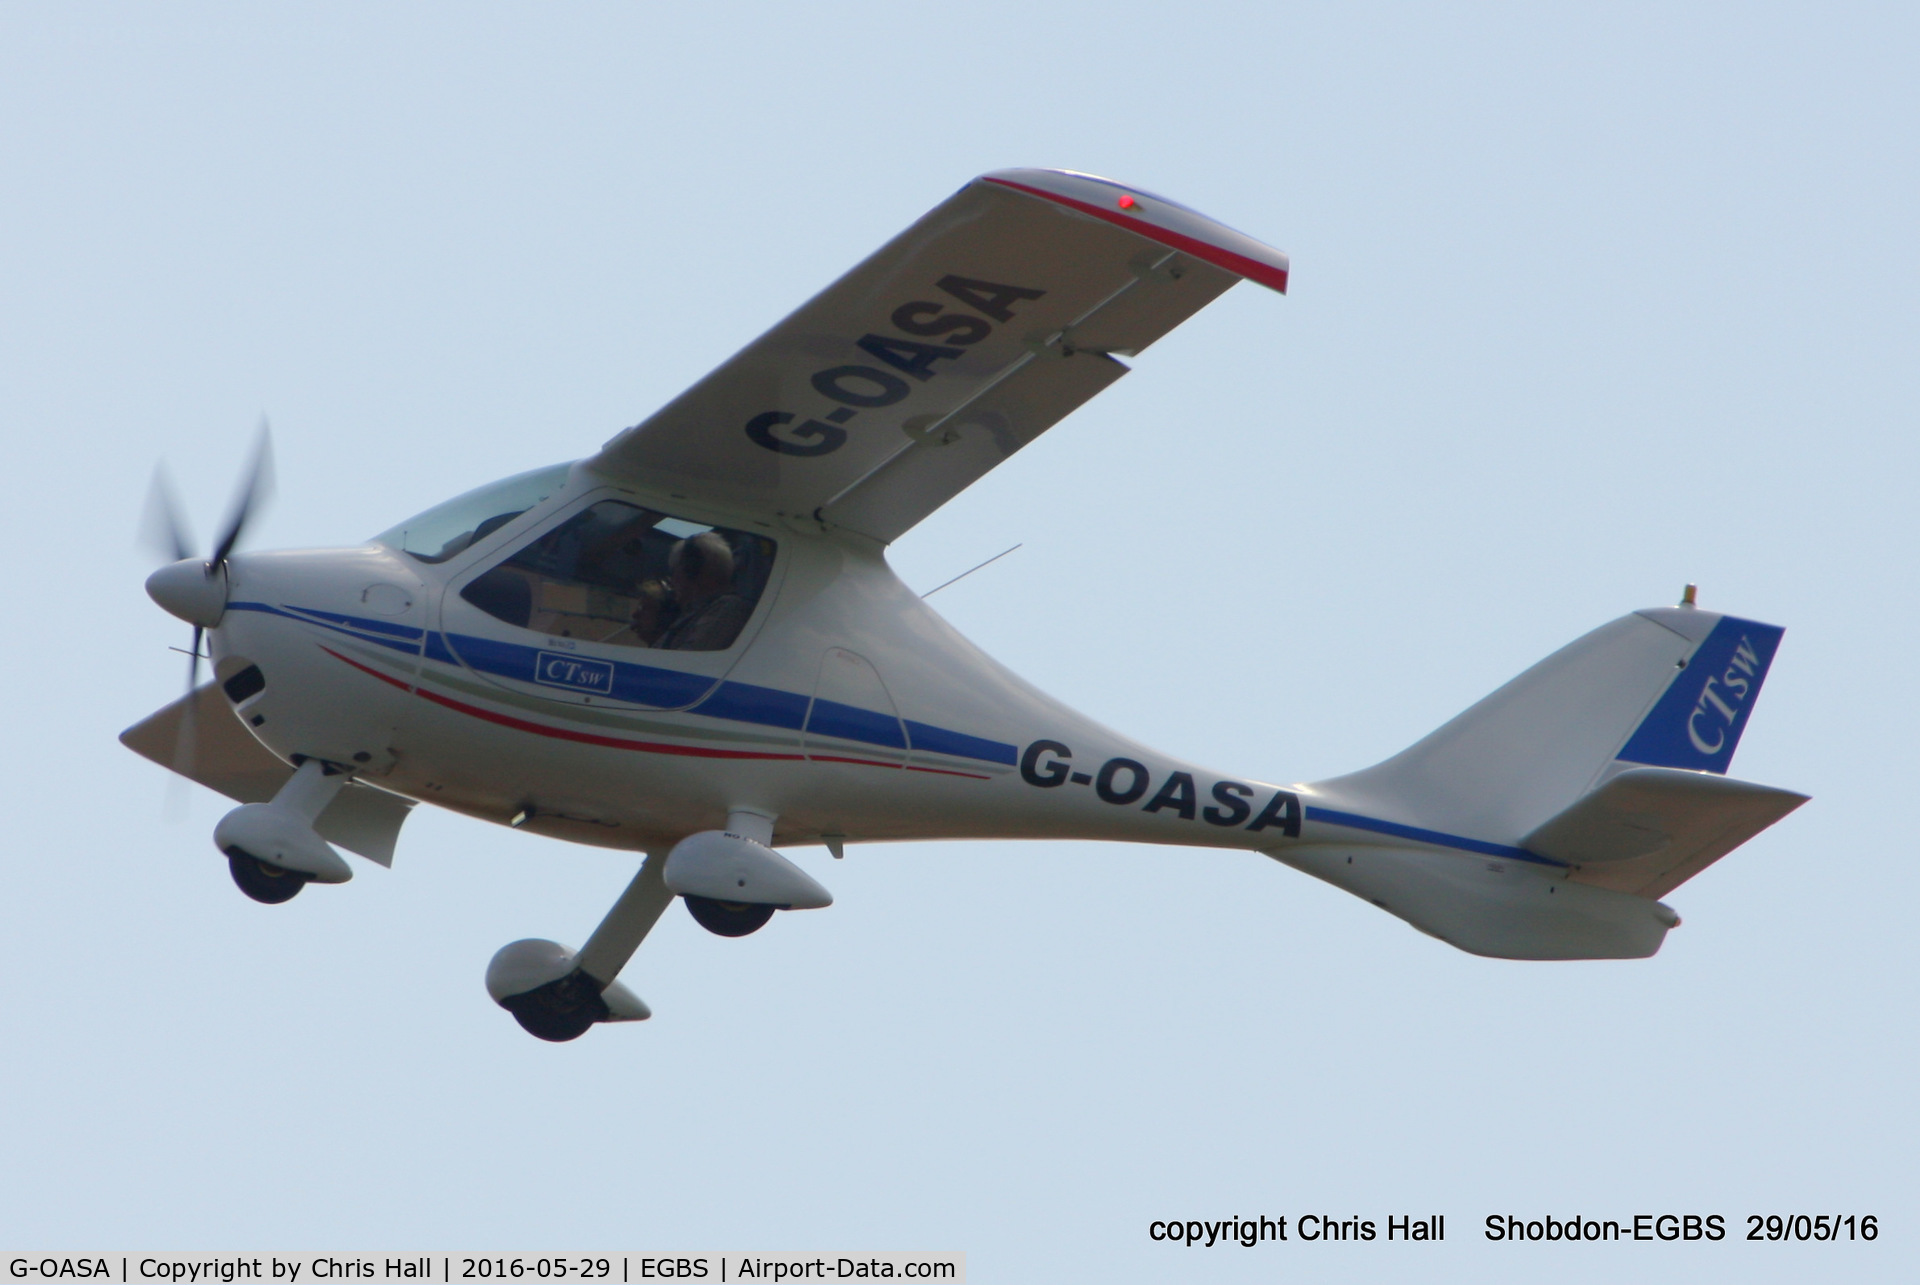 G-OASA, 2009 Flight Design CTSW C/N 8497, at Shobdon